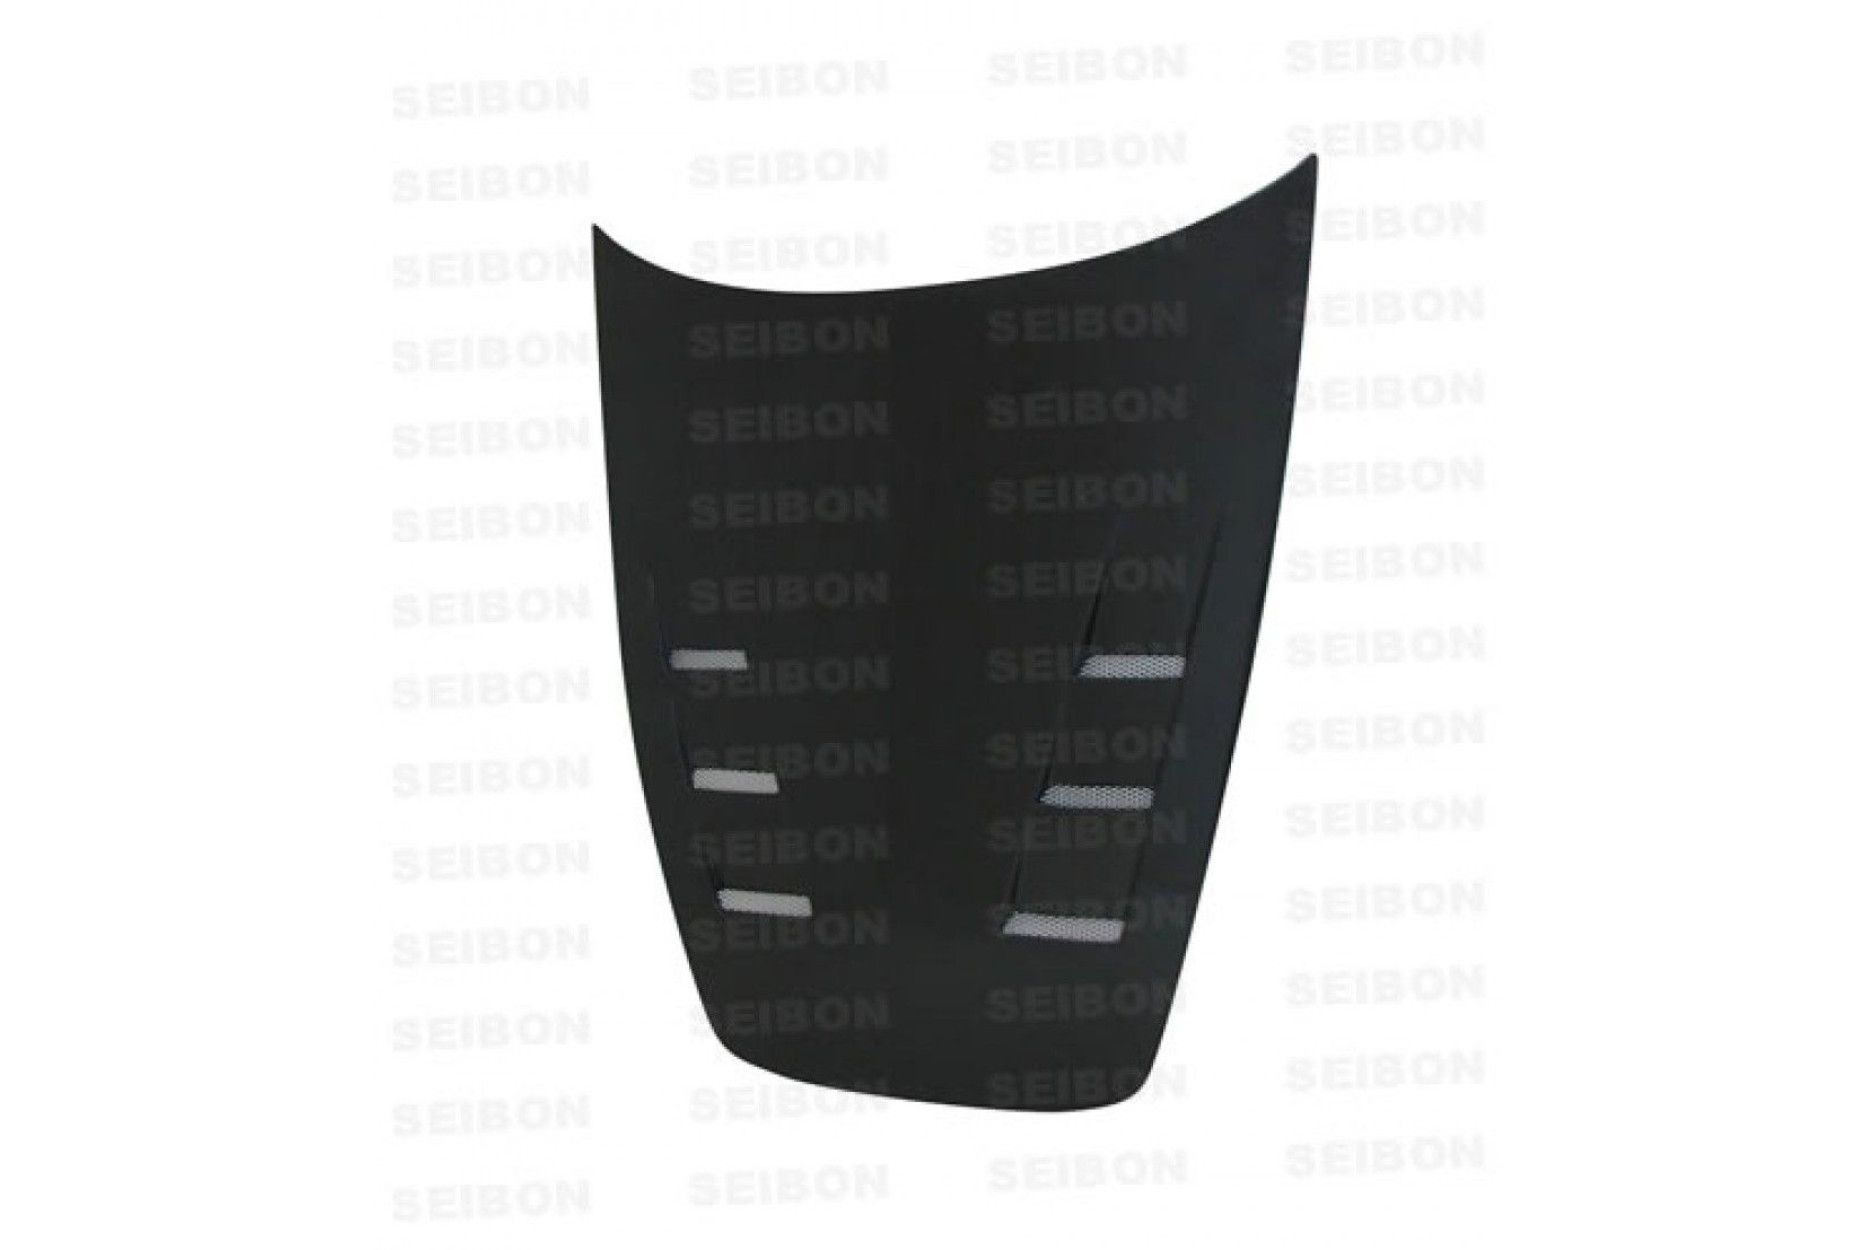 Seibon carbon HOOD for HONDA S2000 (AP1/2)* 2000 - 2010 TS-style